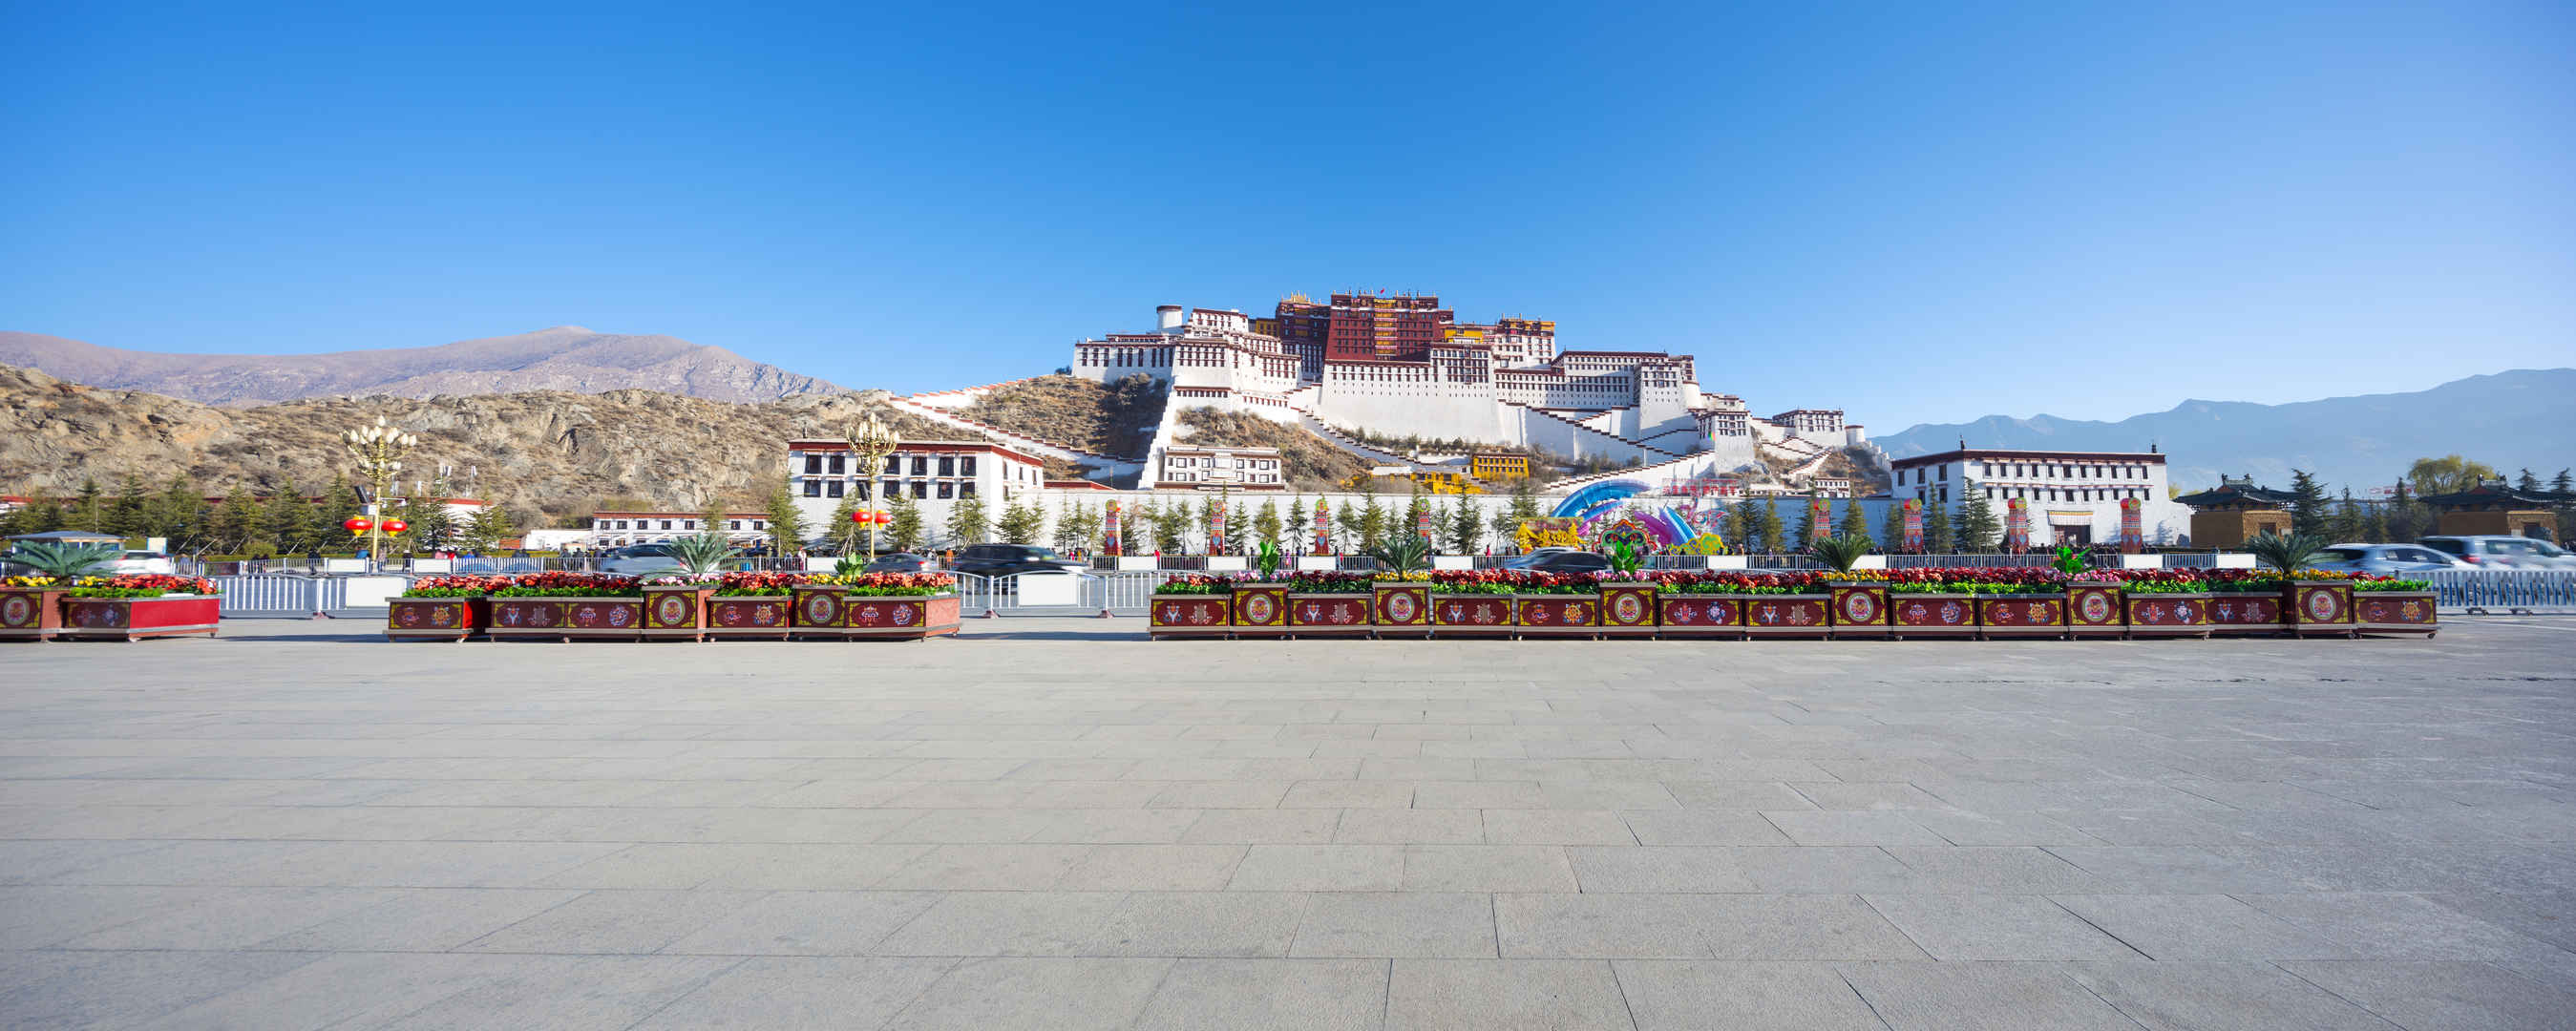 中国西藏布达拉宫风景图-